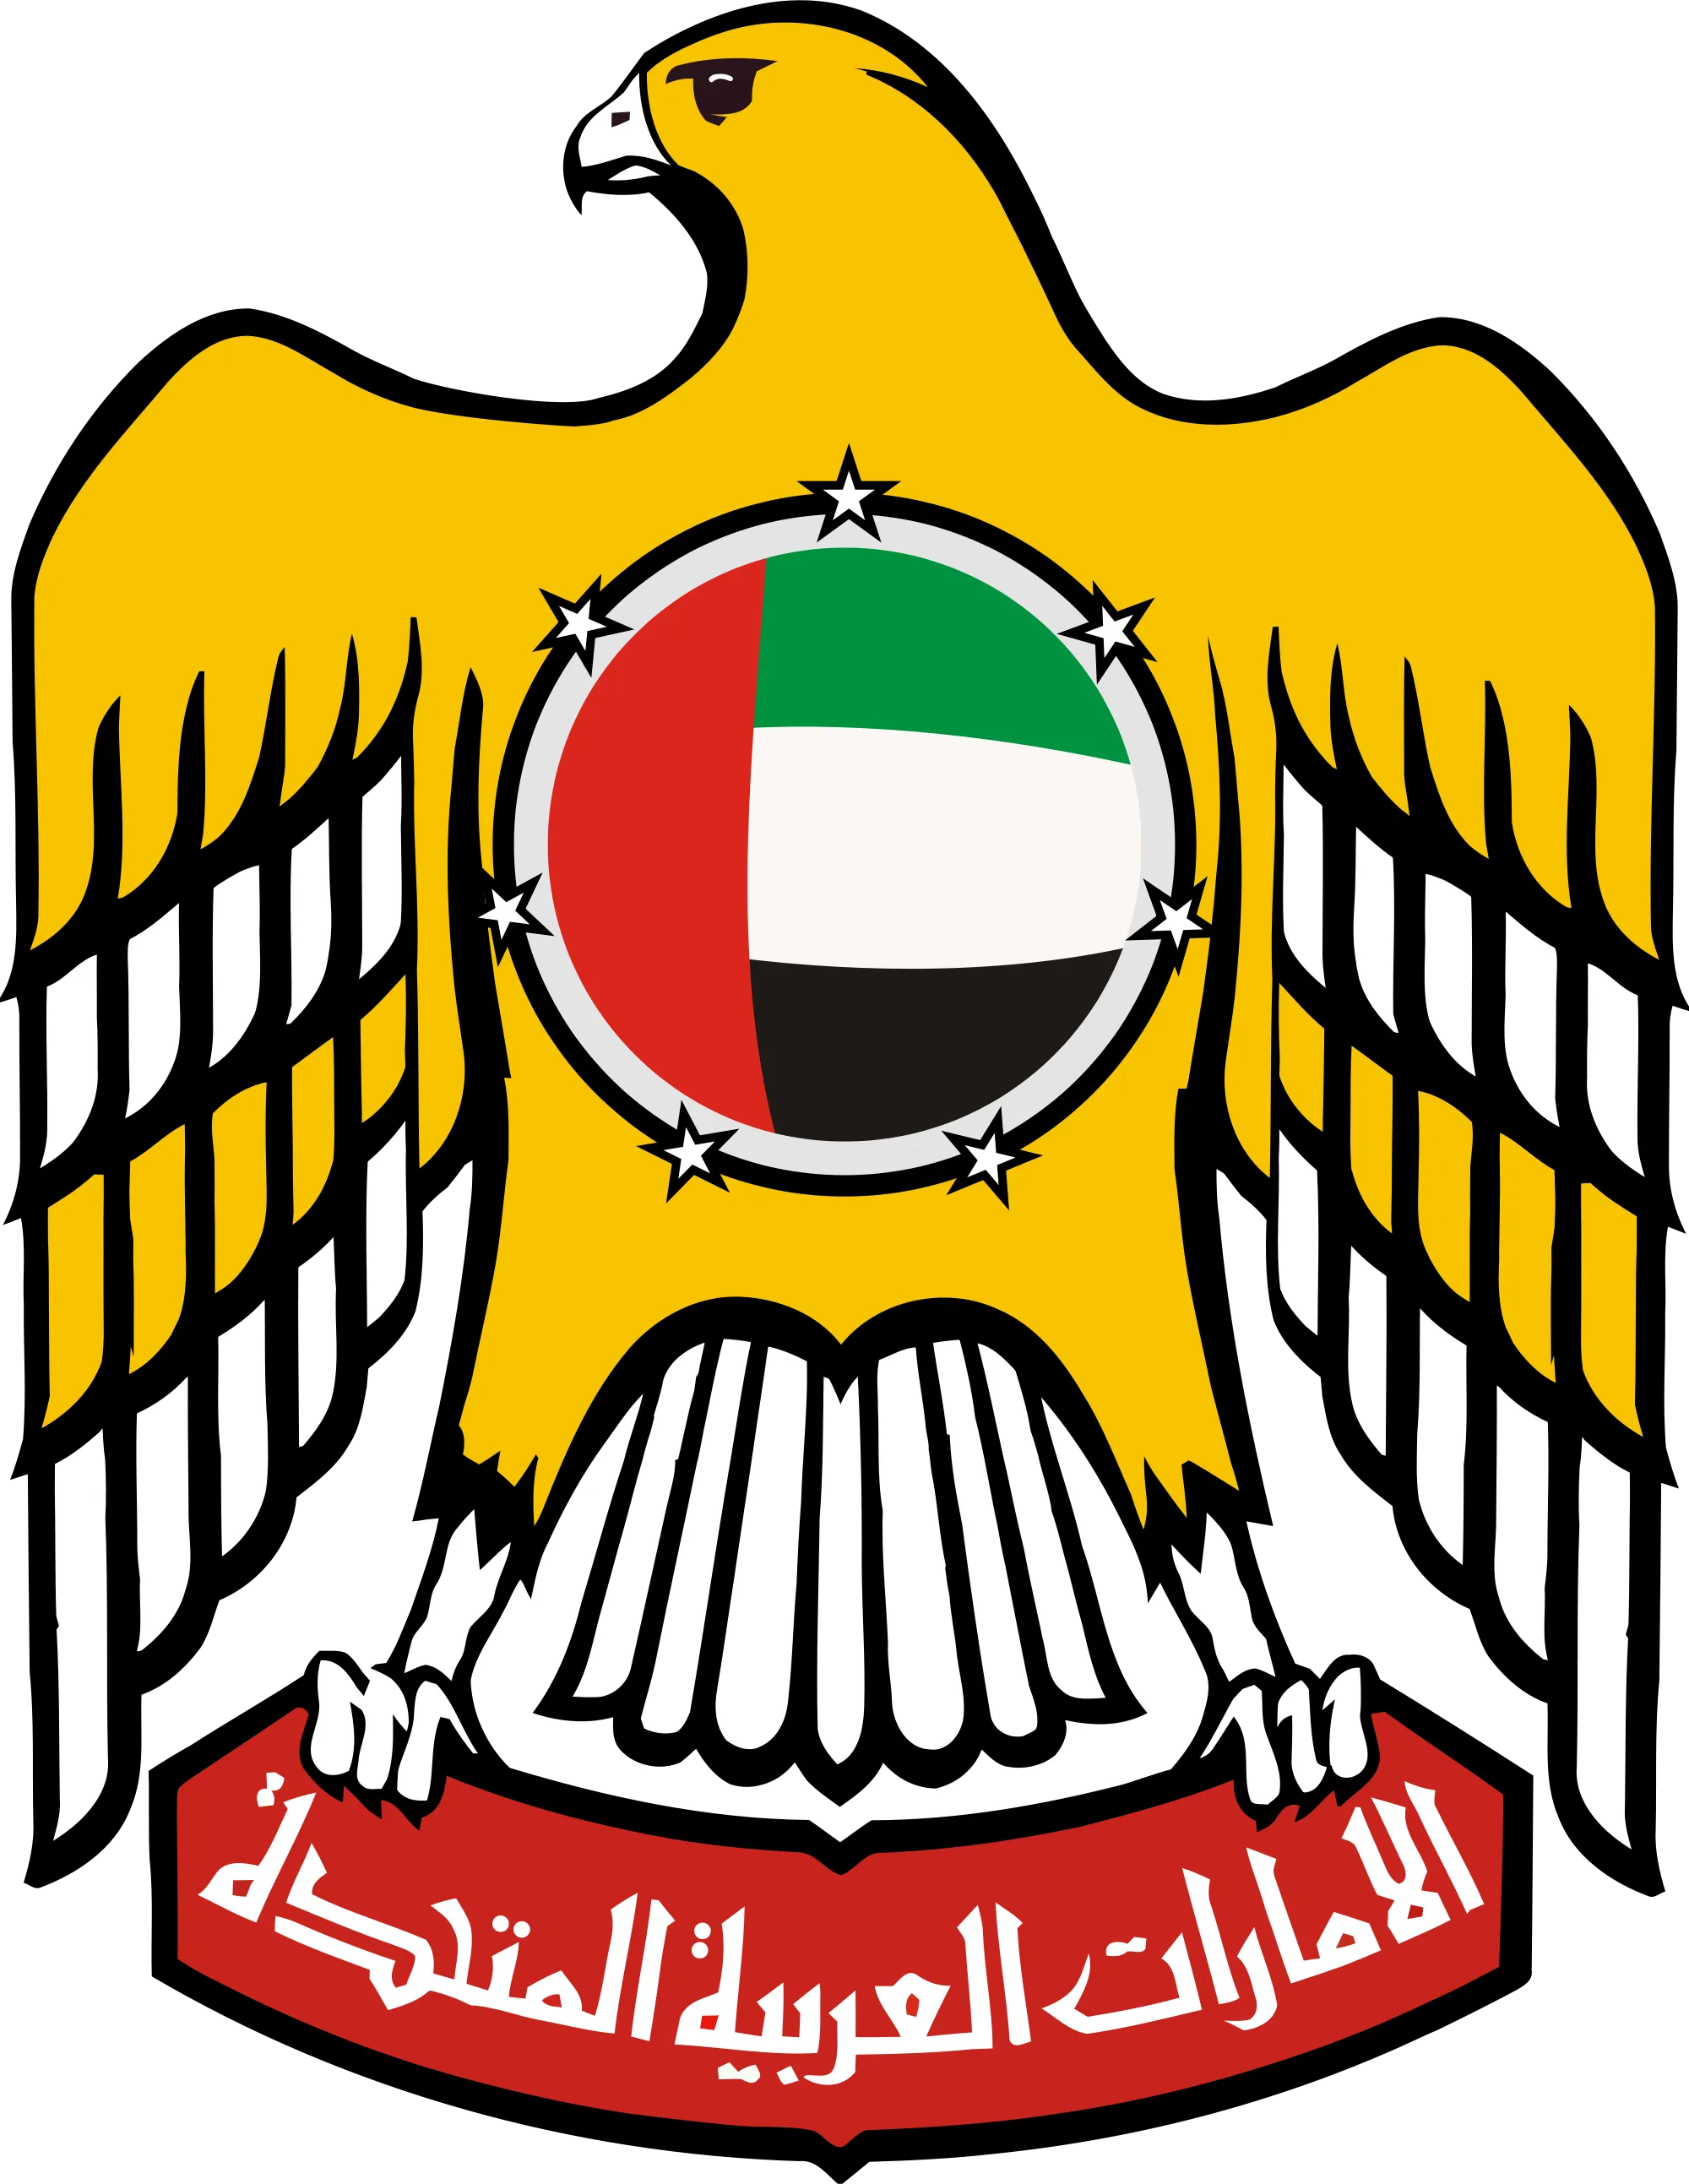 Címer az Egyesült Arab Emírségek fotók, értéke, leírás